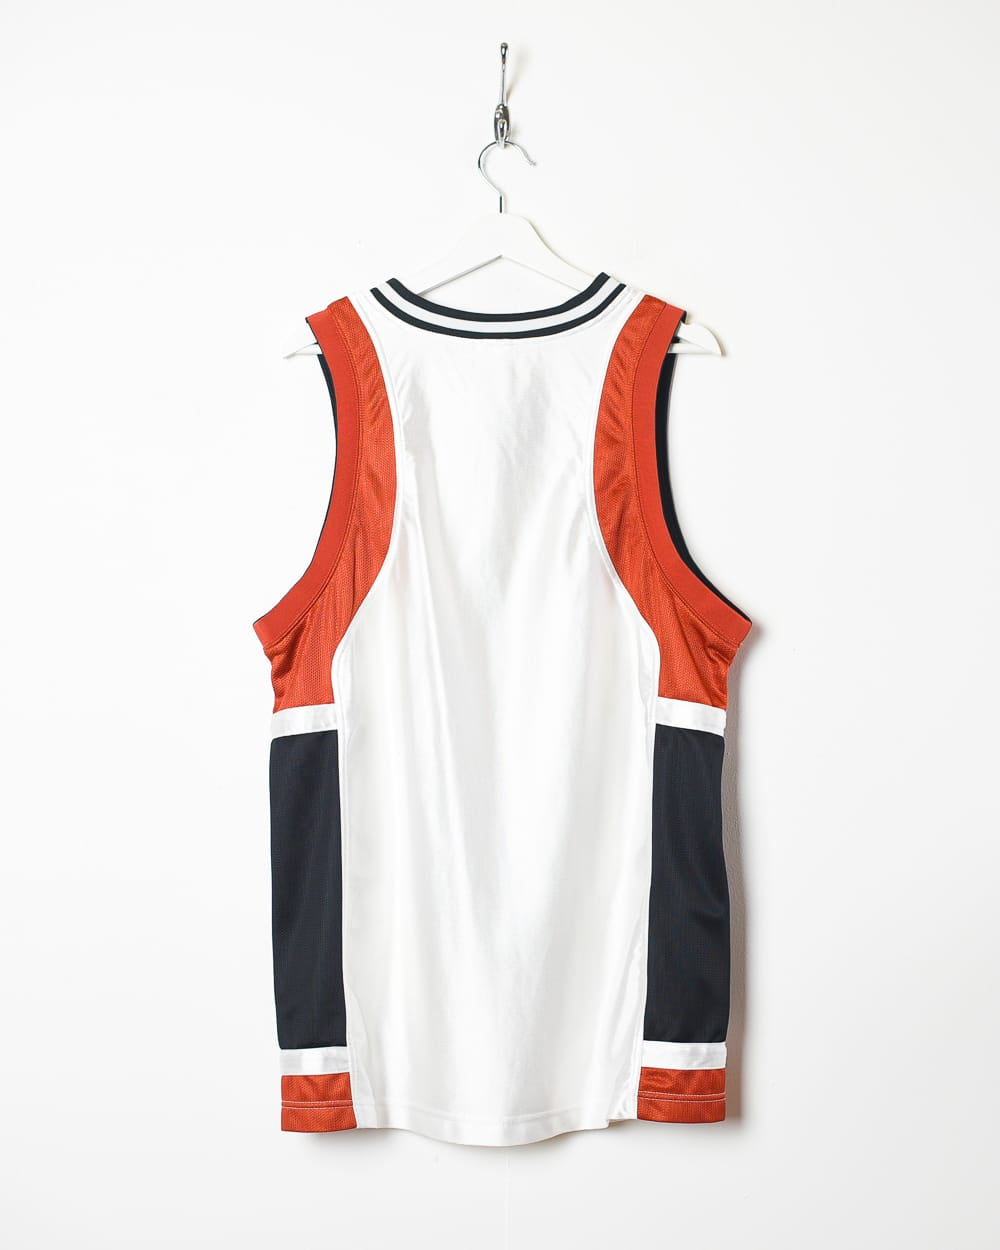 White Nike Vest - Large